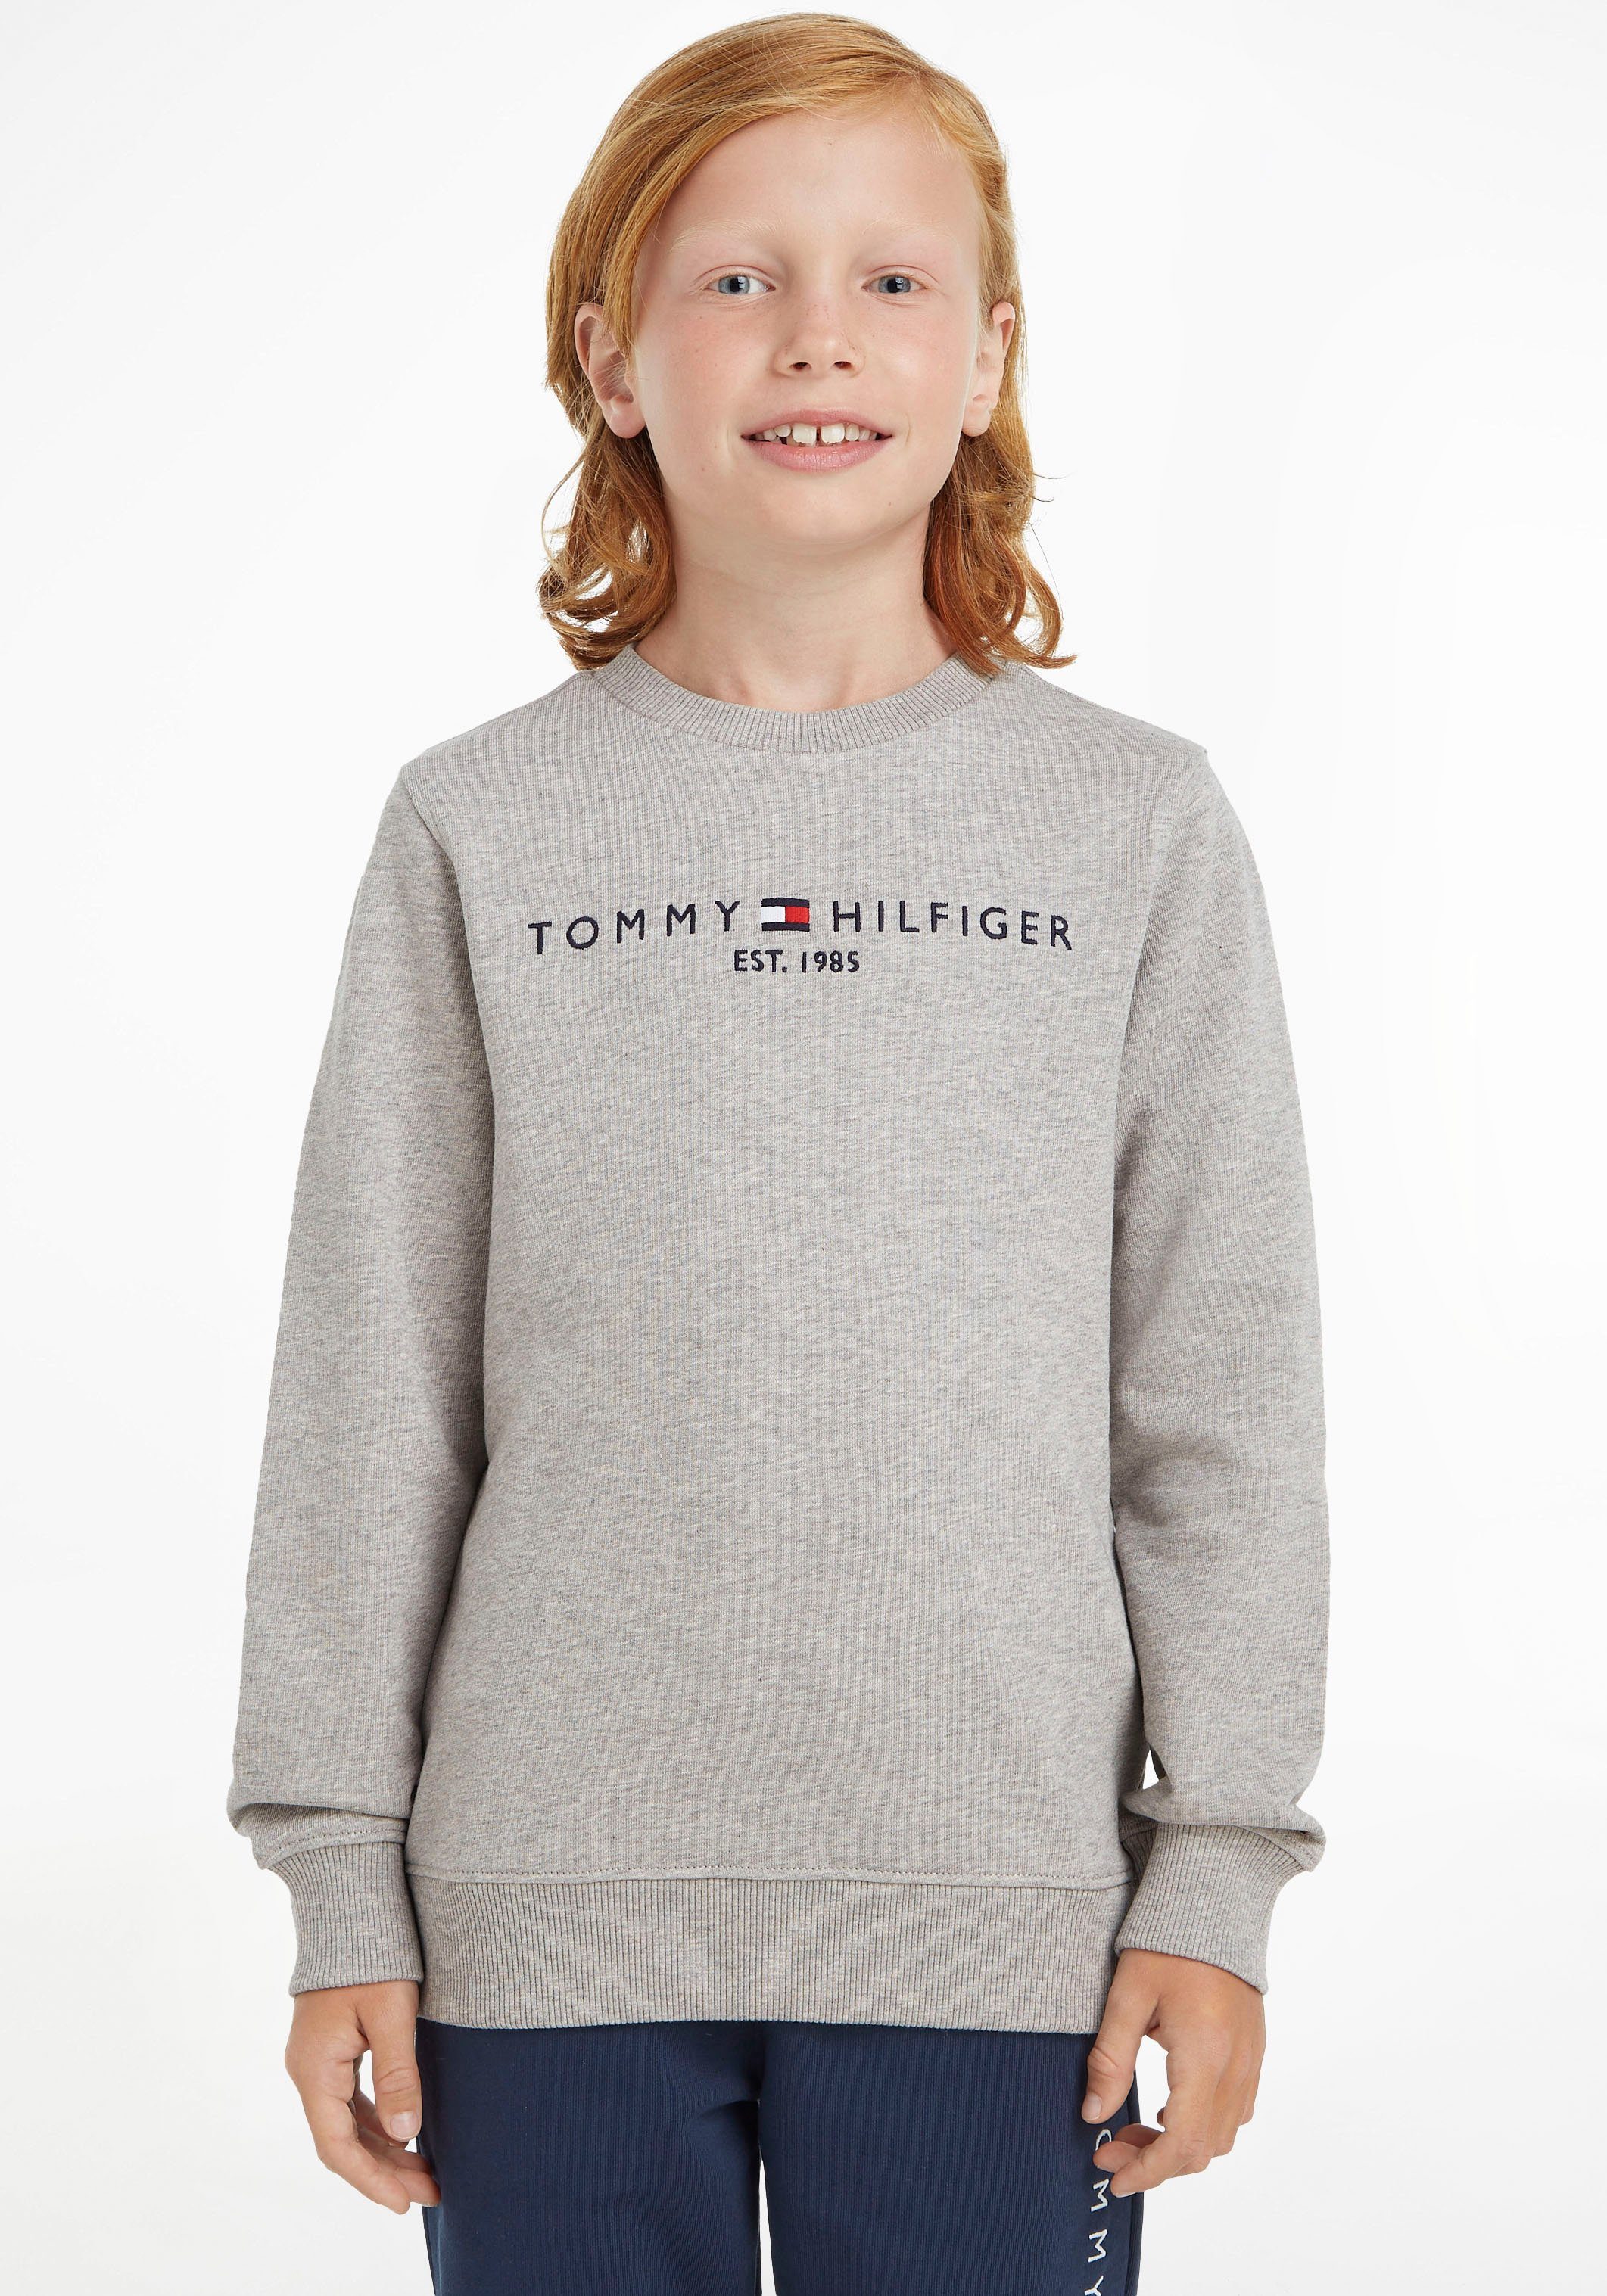 Tommy Hilfiger Sweatshirt ESSENTIAL Mädchen MiniMe,für Kids und Jungen Kinder Junior SWEATSHIRT